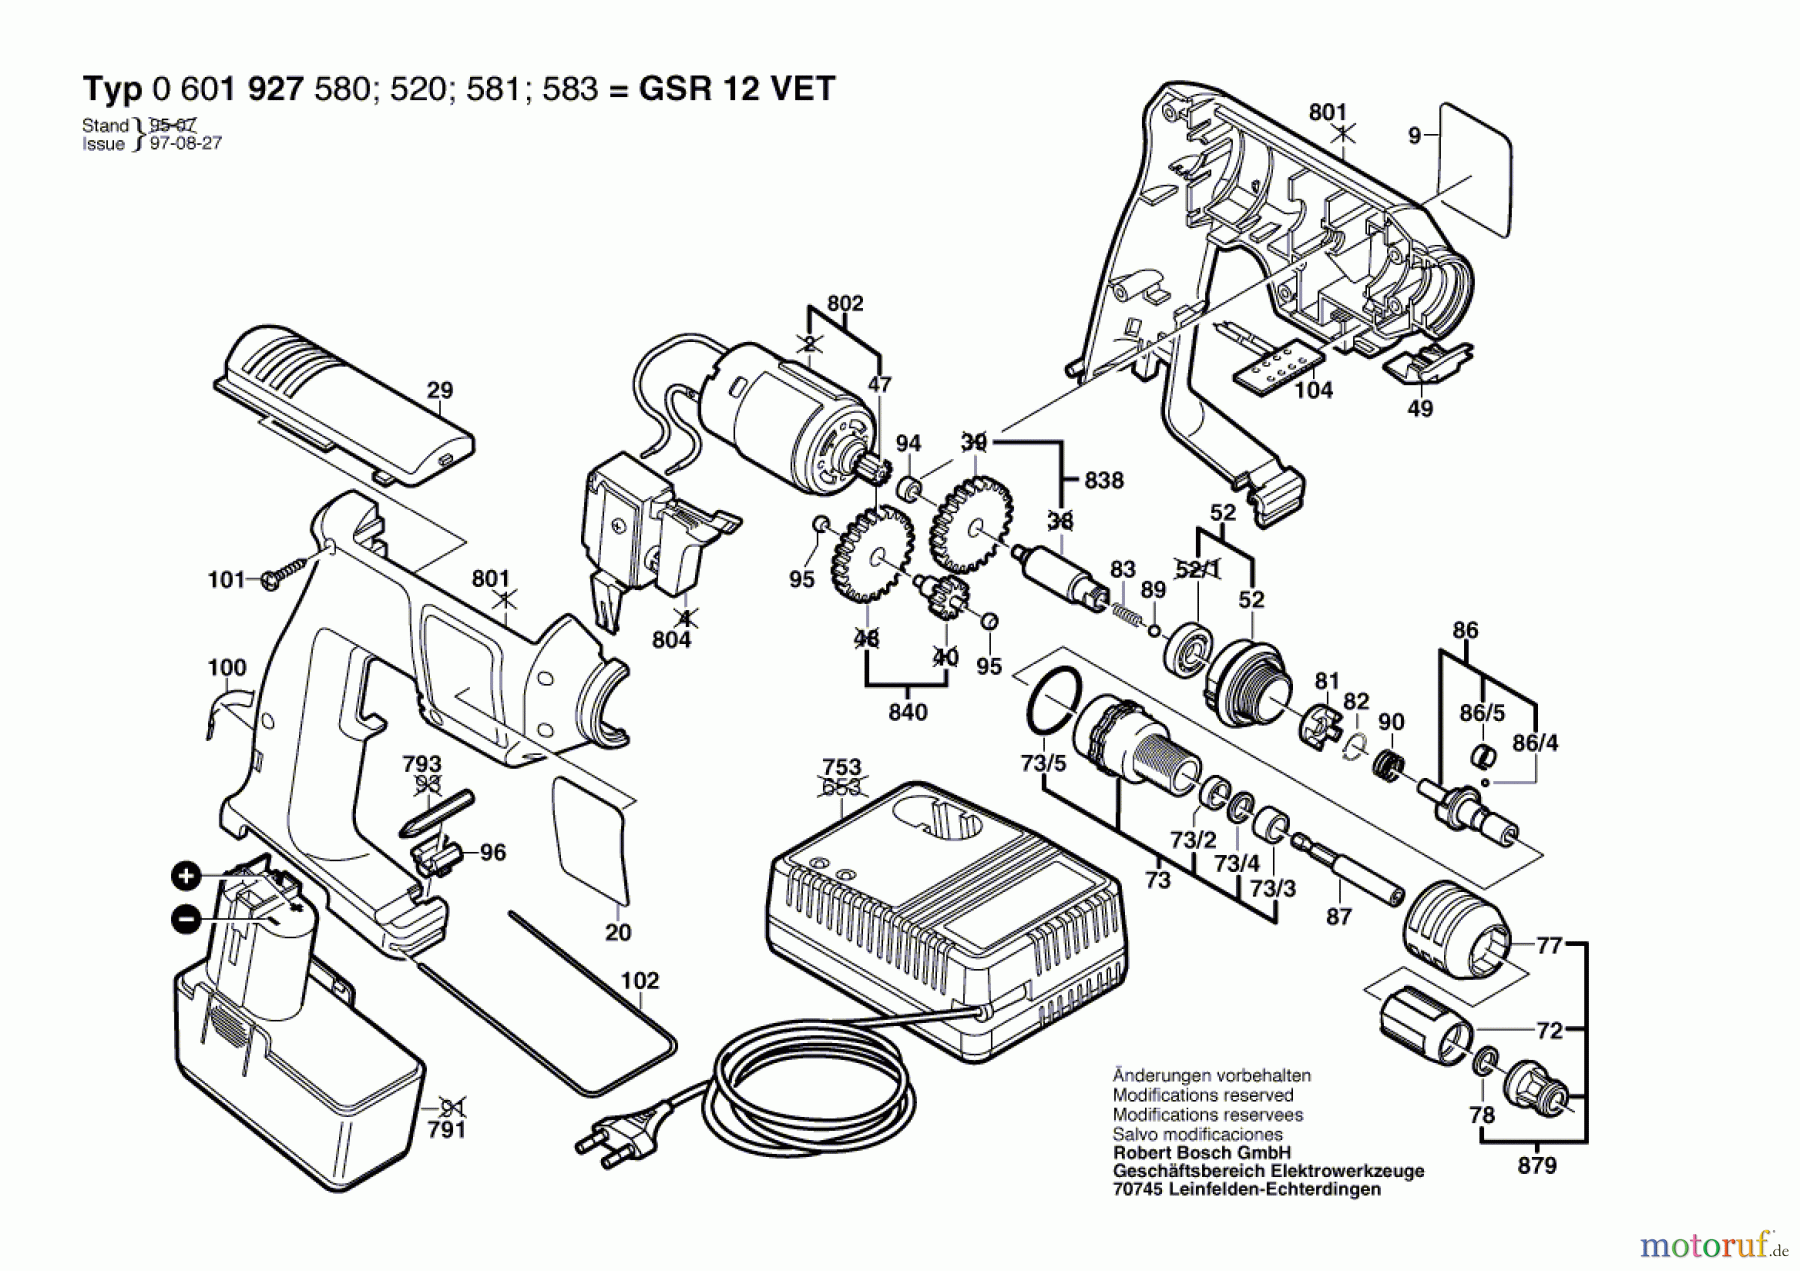  Bosch Akku Werkzeug Akku-Schrauber GSR 12 VET Seite 1